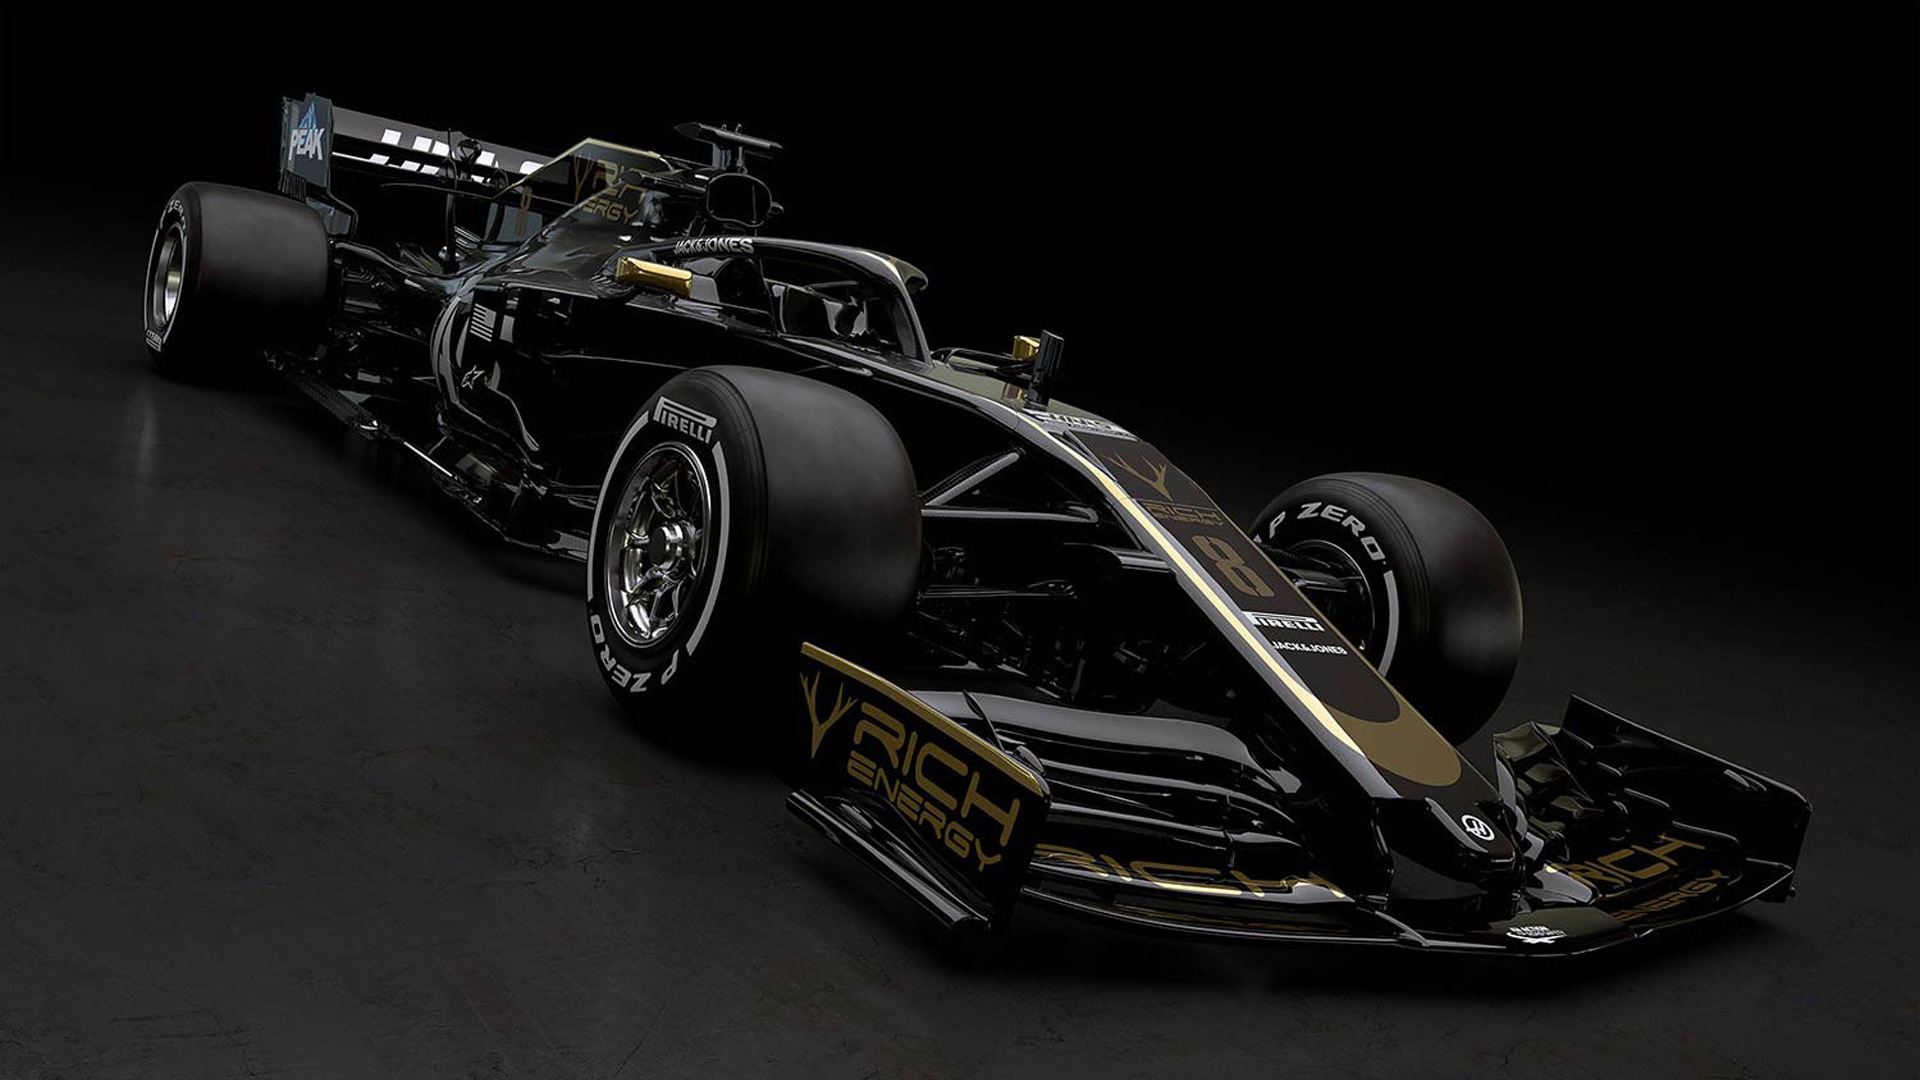 2019 Haas VF-19 Formula 1 race car